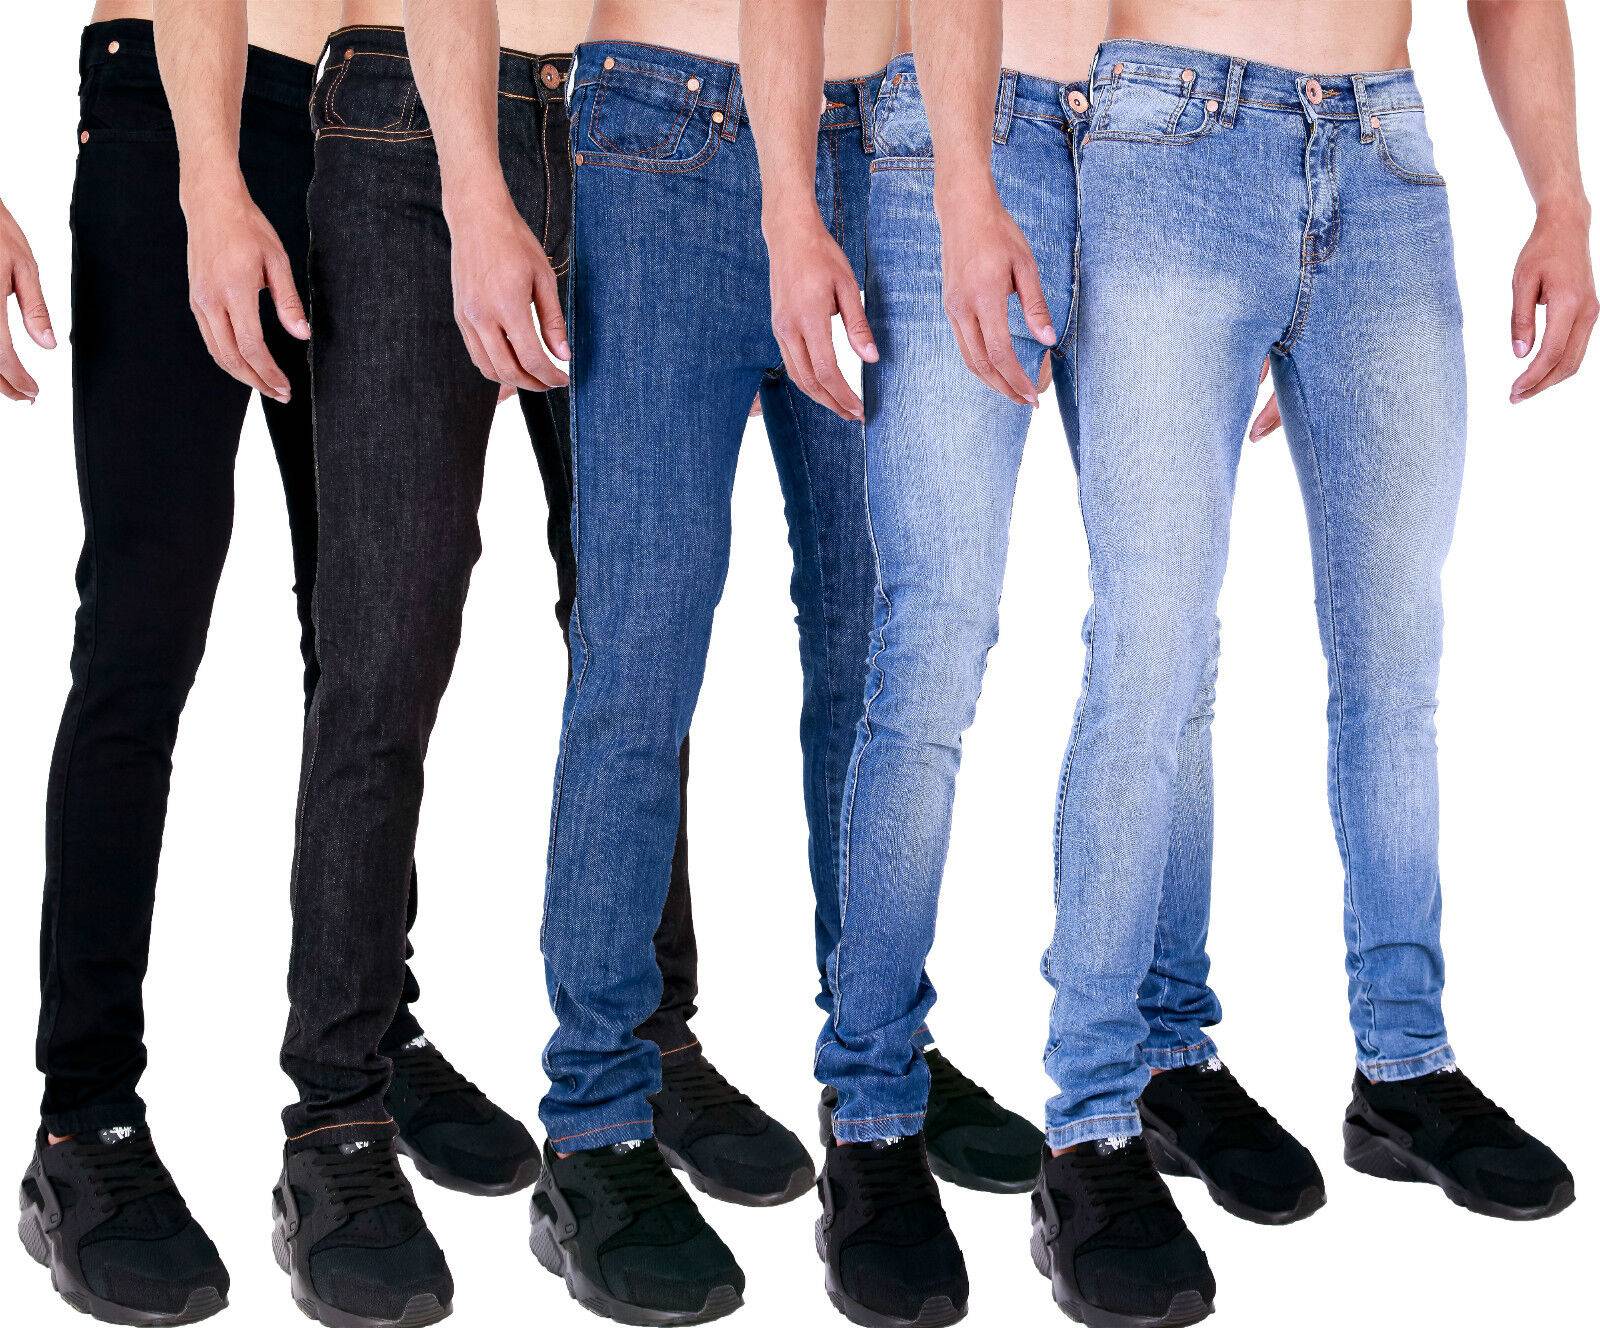 Лайфхак: покупаем джинсы в америке